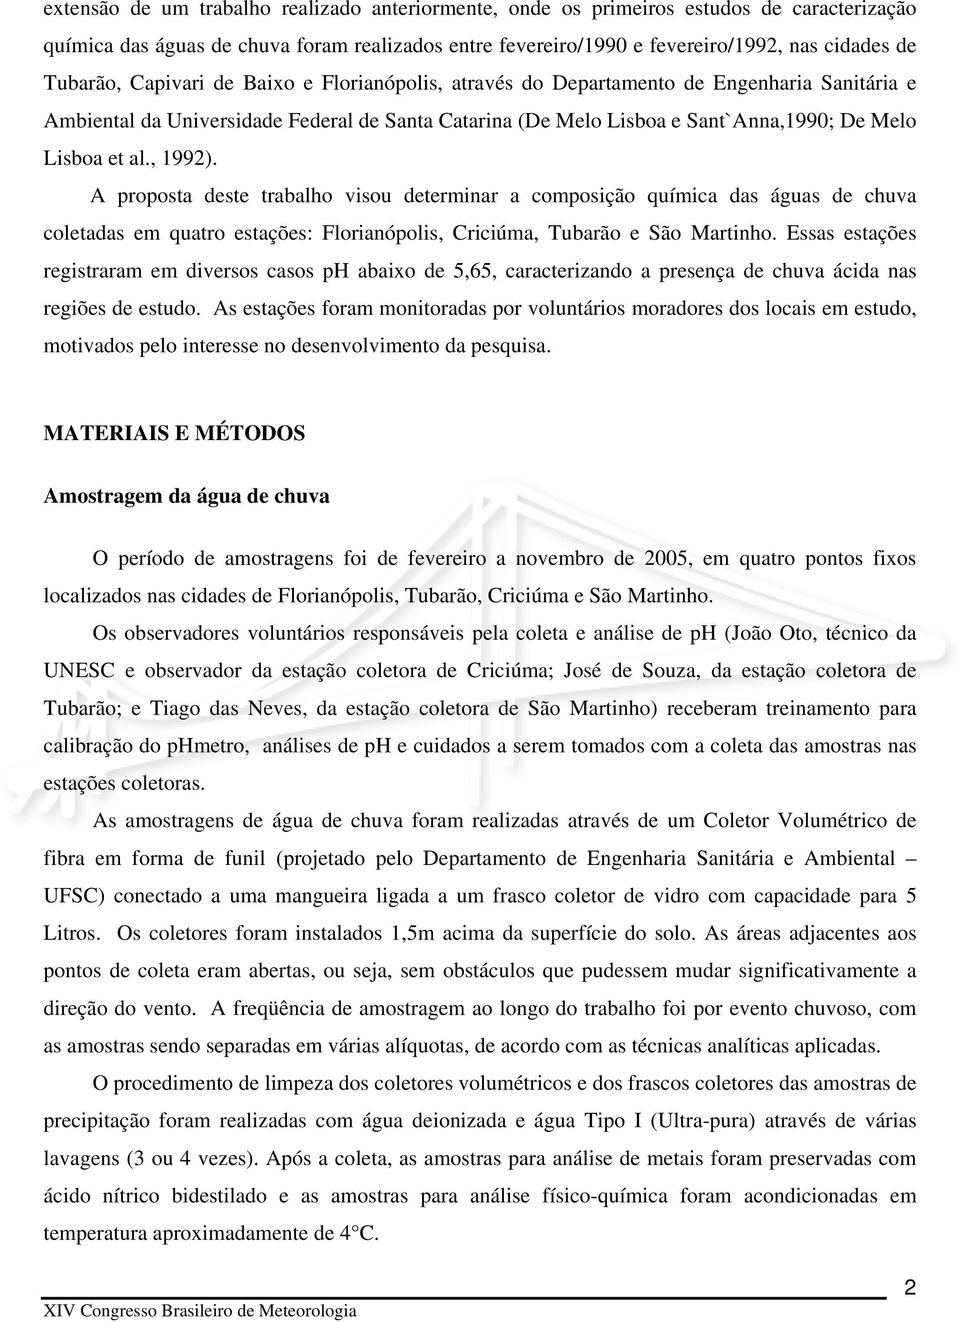 A proposta deste trabalho visou determinar a composição química das águas de chuva coletadas em quatro estações: Florianópolis, Criciúma, Tubarão e São Martinho.